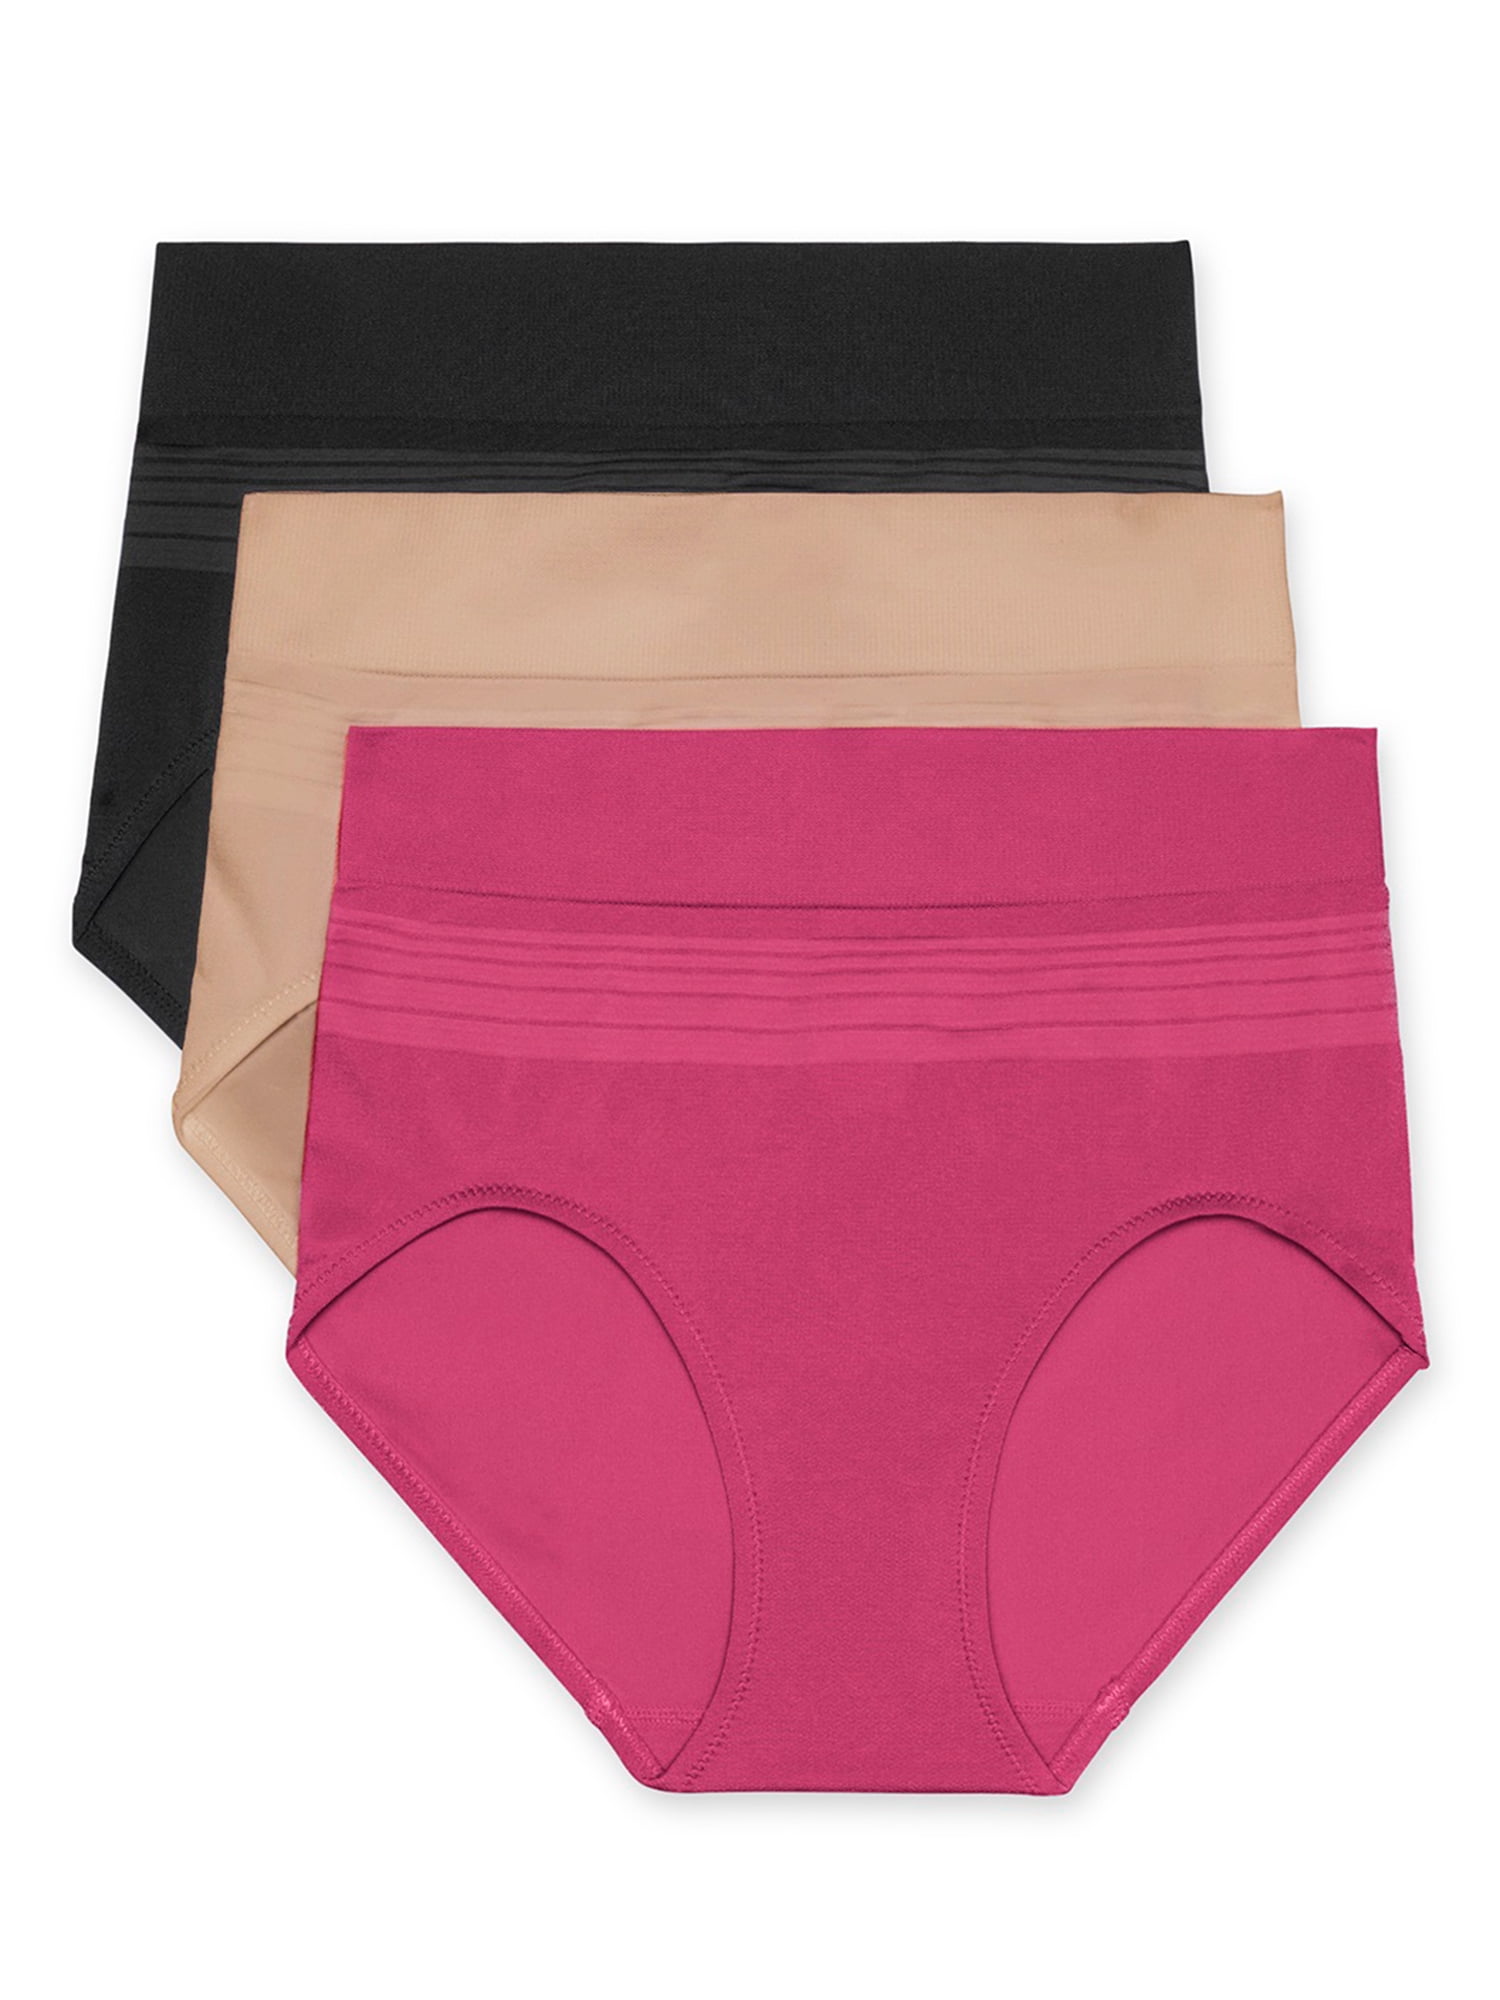 3Pr WARNER'S Panties Prevents Muffin Top Underwear S/5 multi